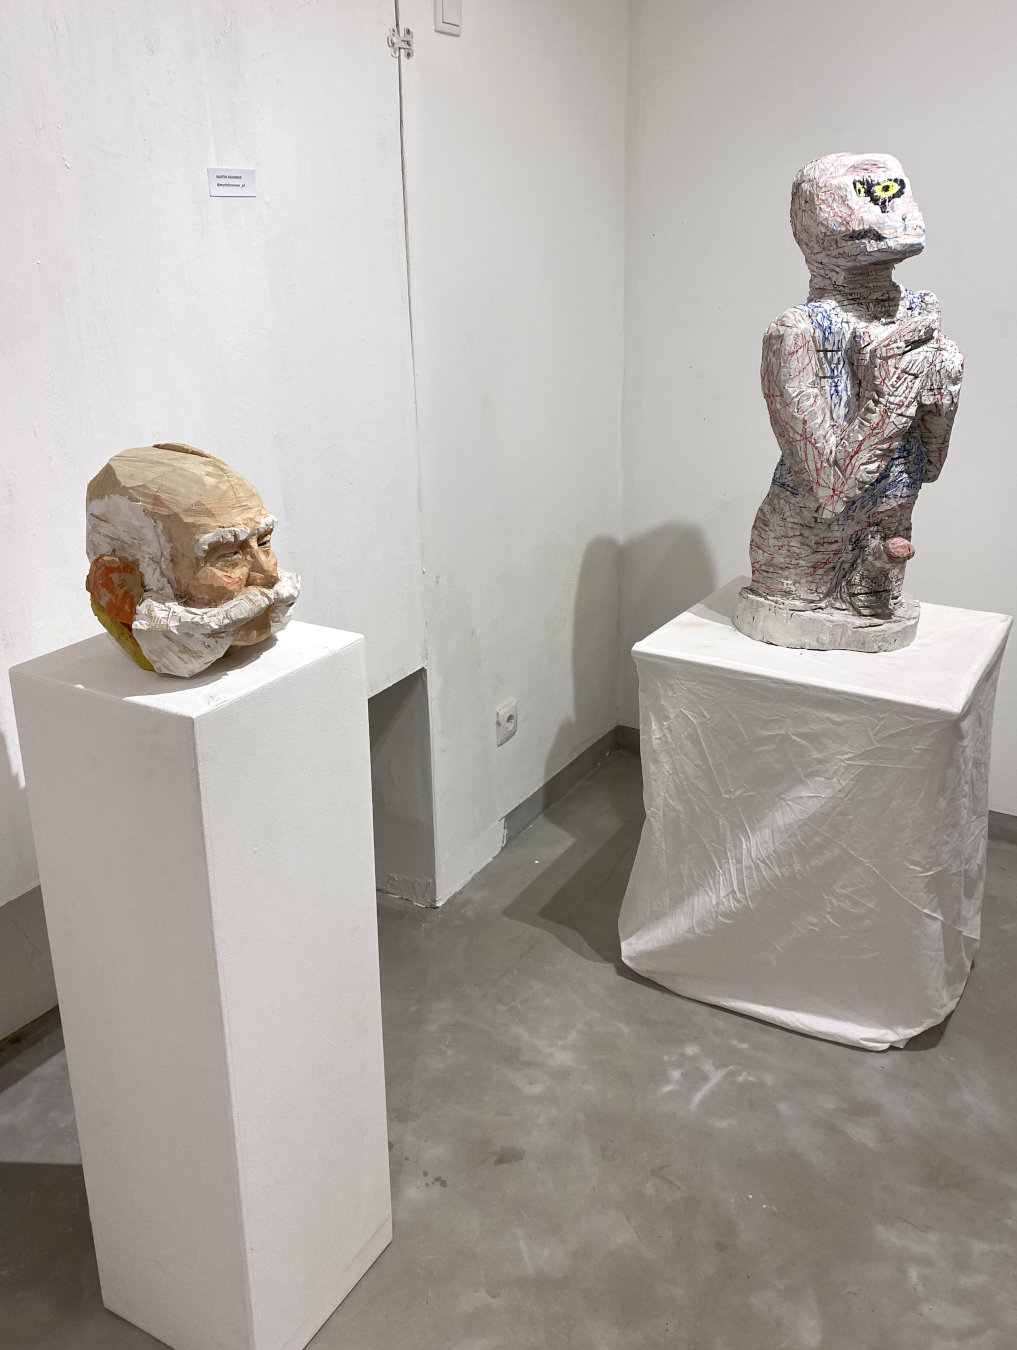 Aktuelle Positionen Skulptur Wien 2023 / Exhibition view with artworks by MARTIN KRAMMER and ALEXANDAR PEEV